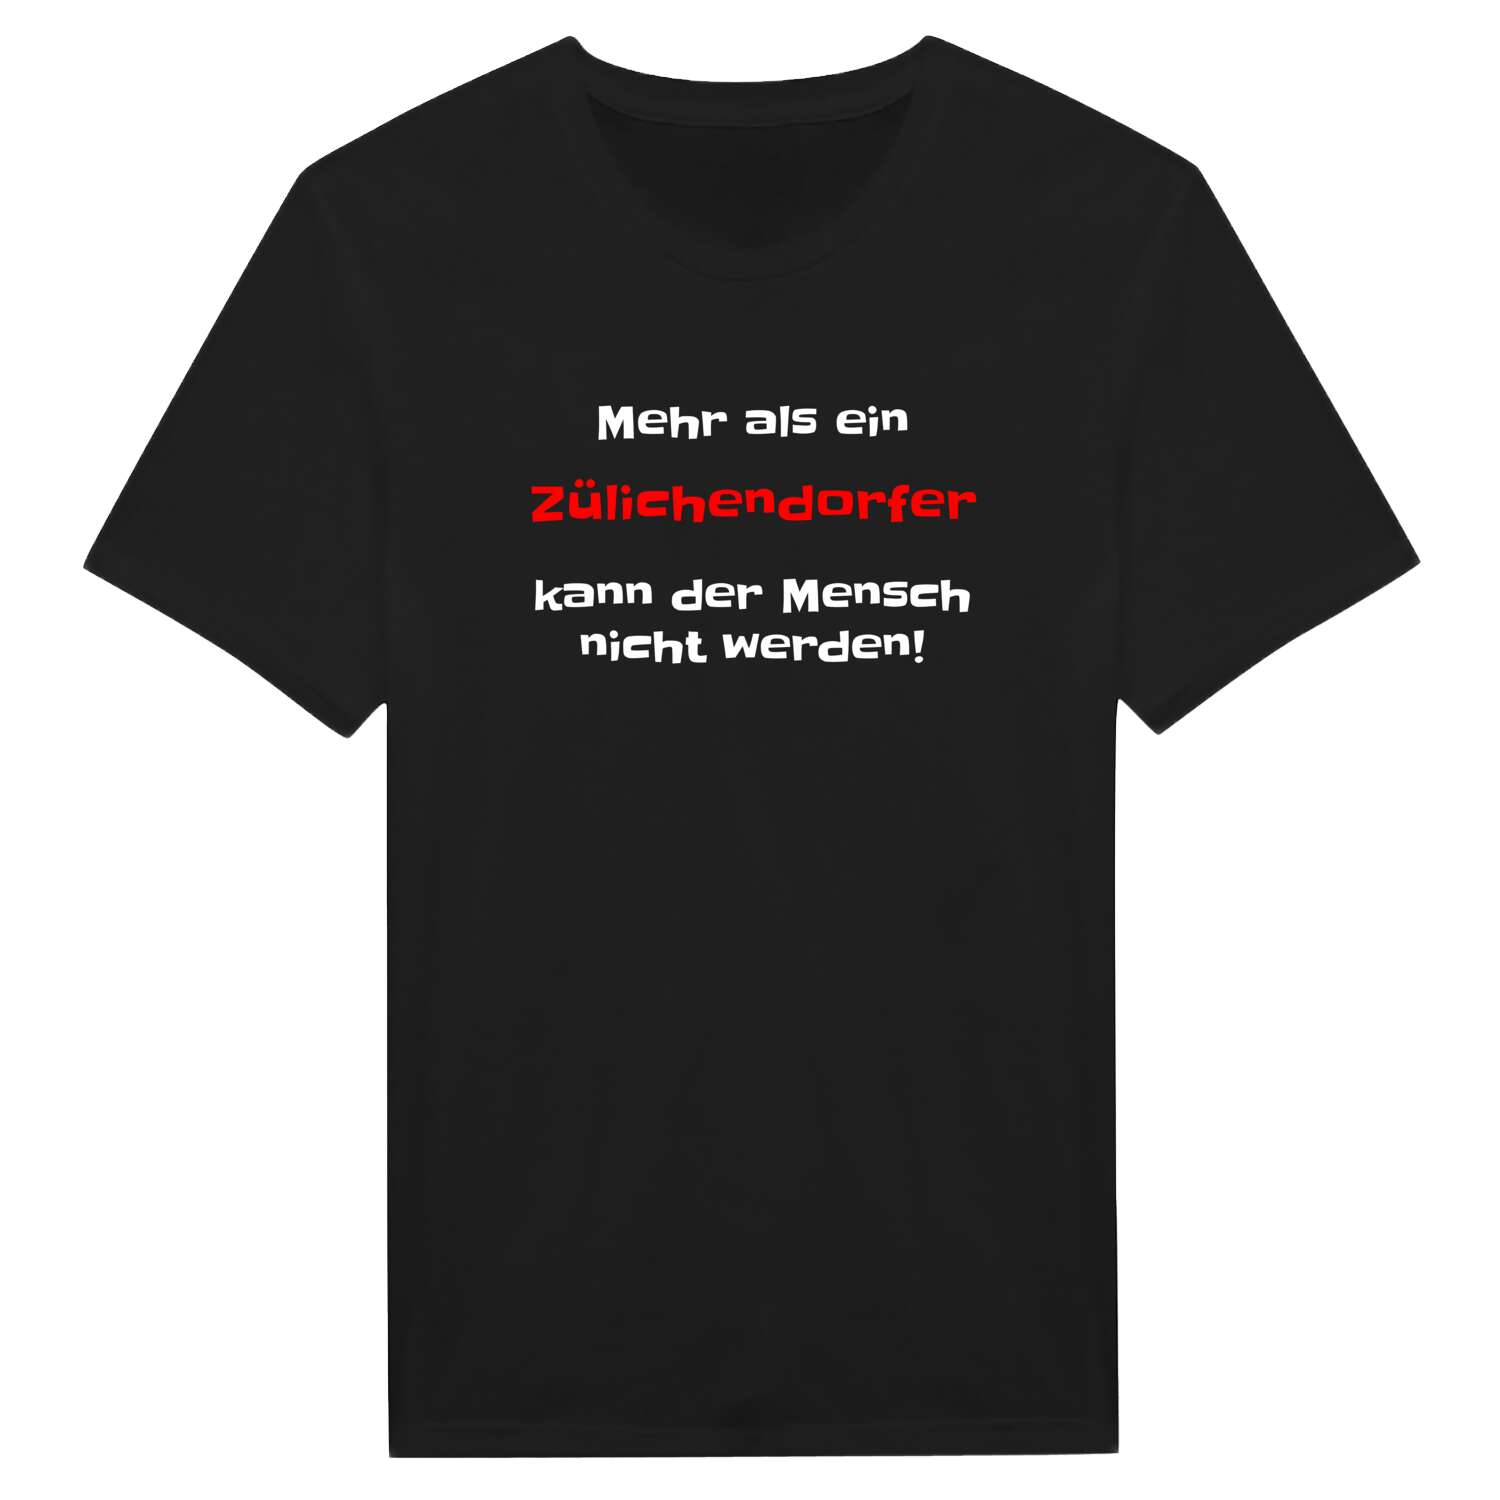 Zülichendorf T-Shirt »Mehr als ein«